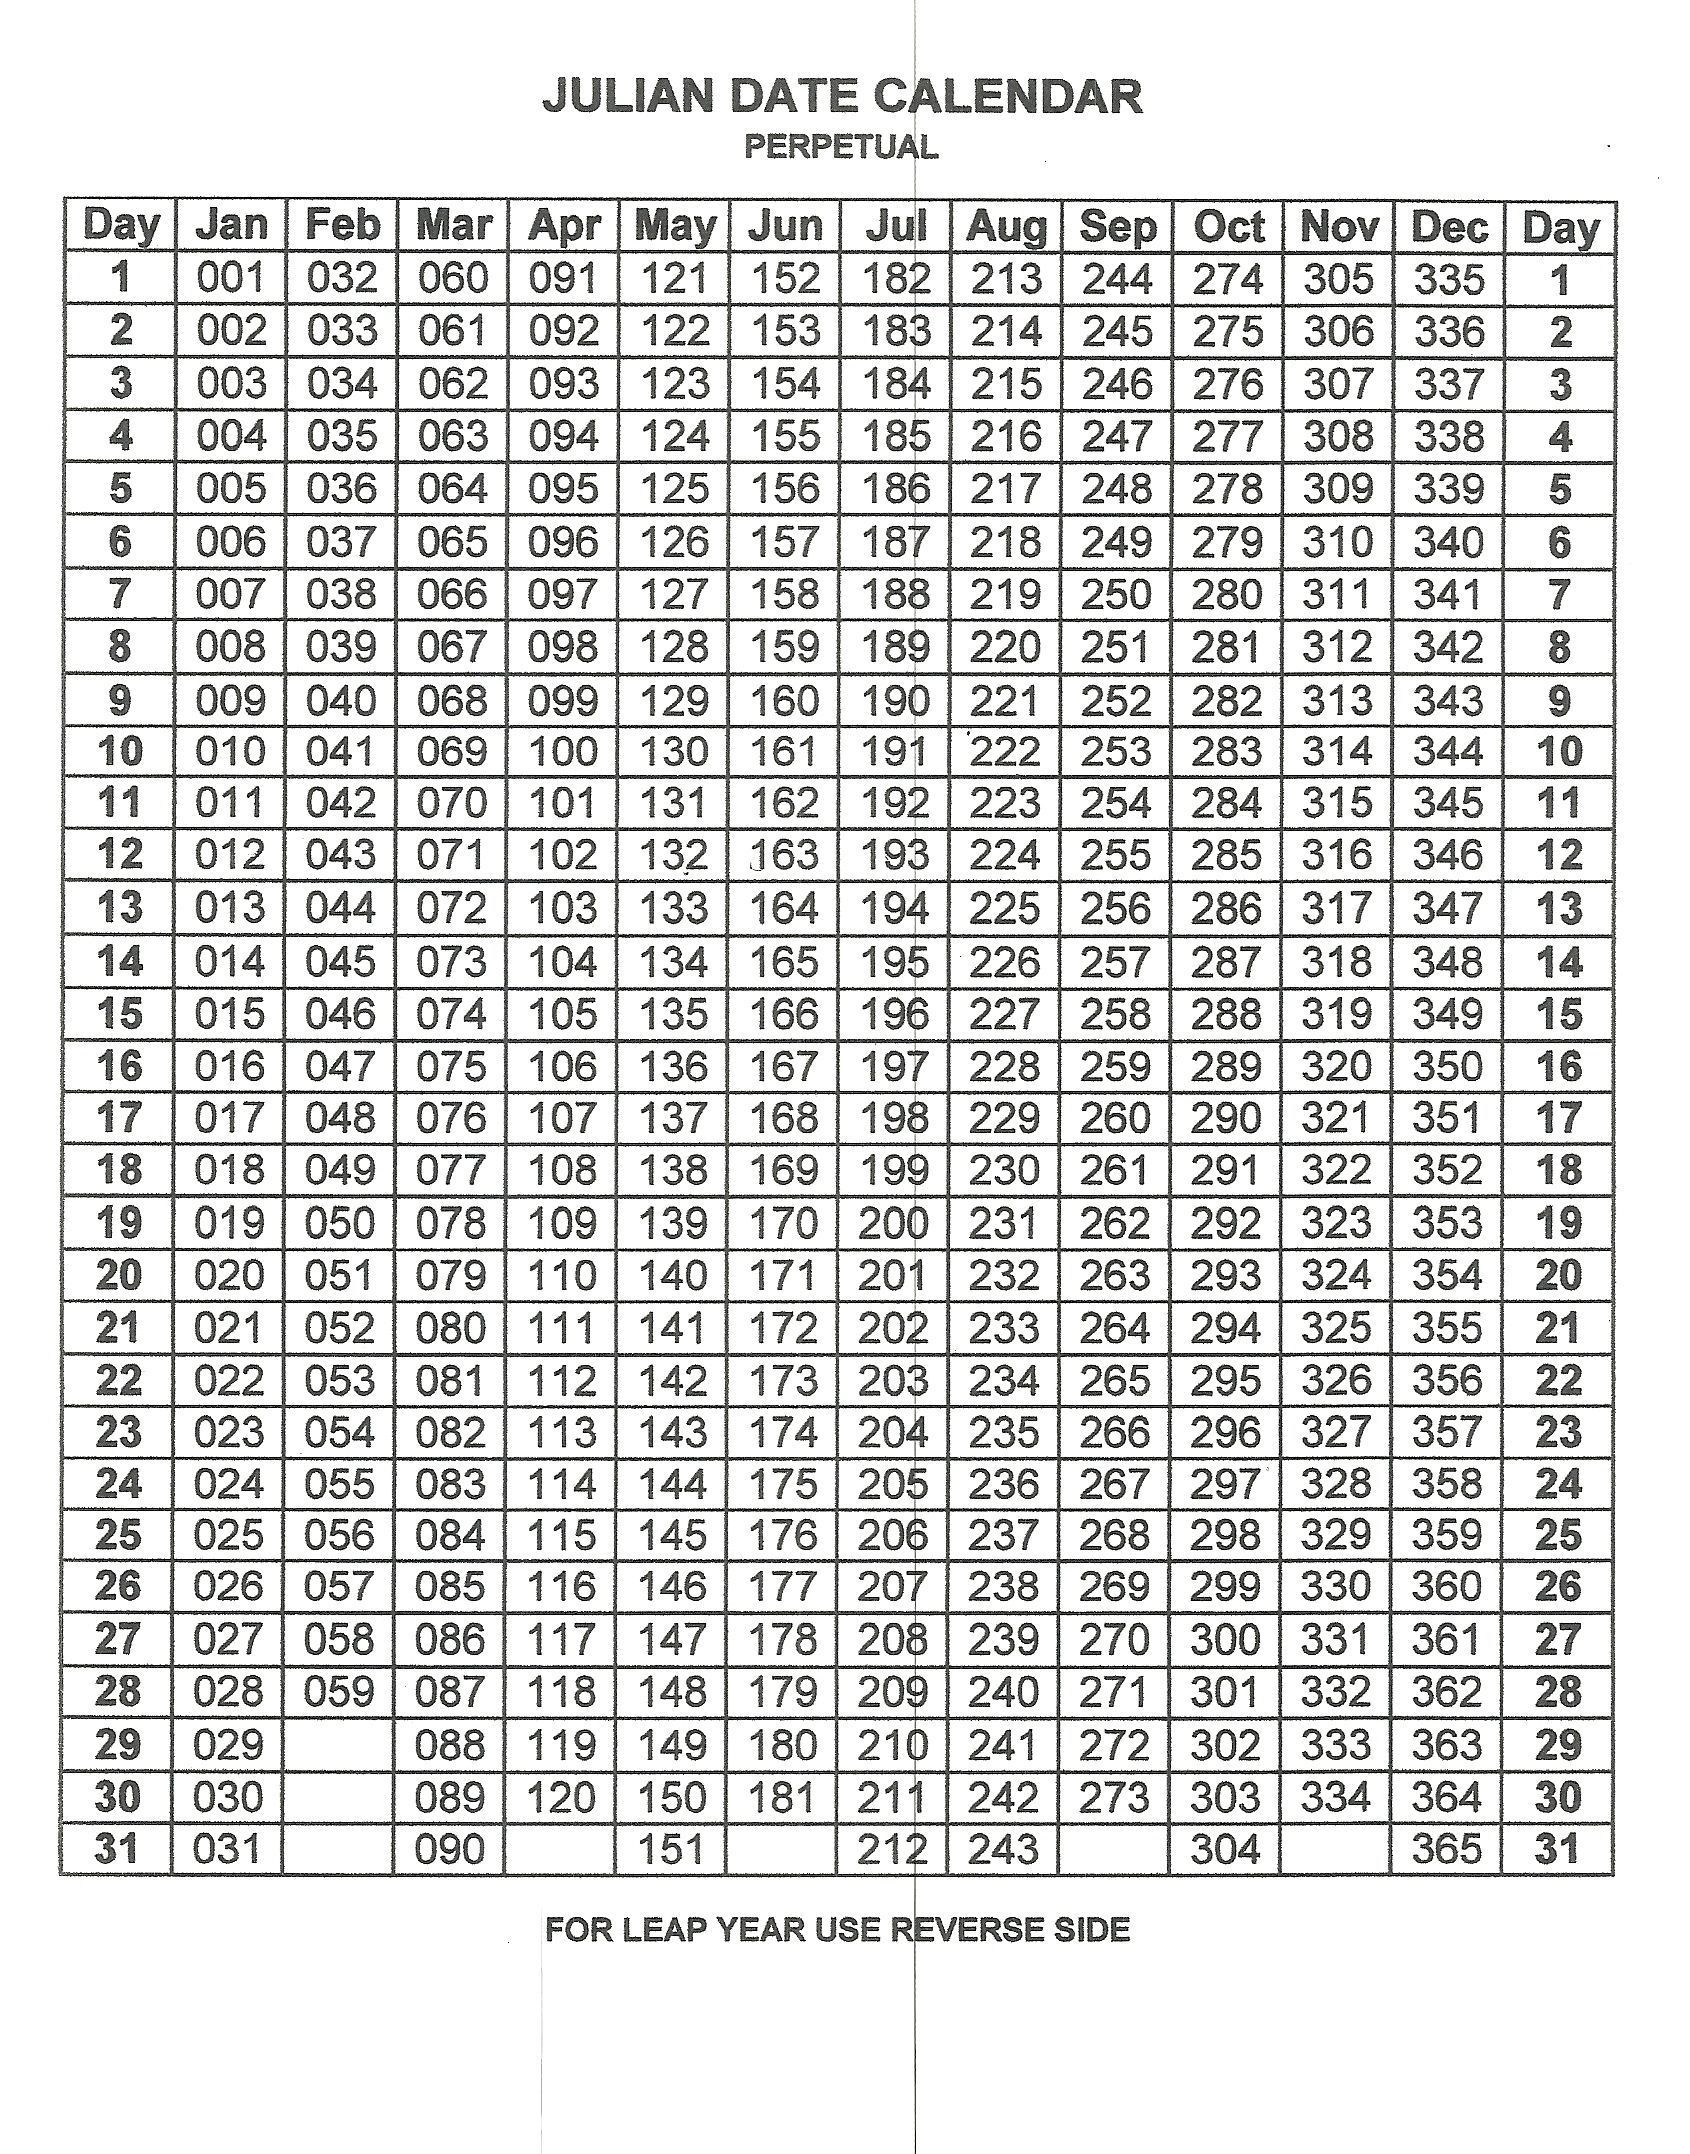 Free Printable Perpetual Julian Calendar In 2020 | Julian